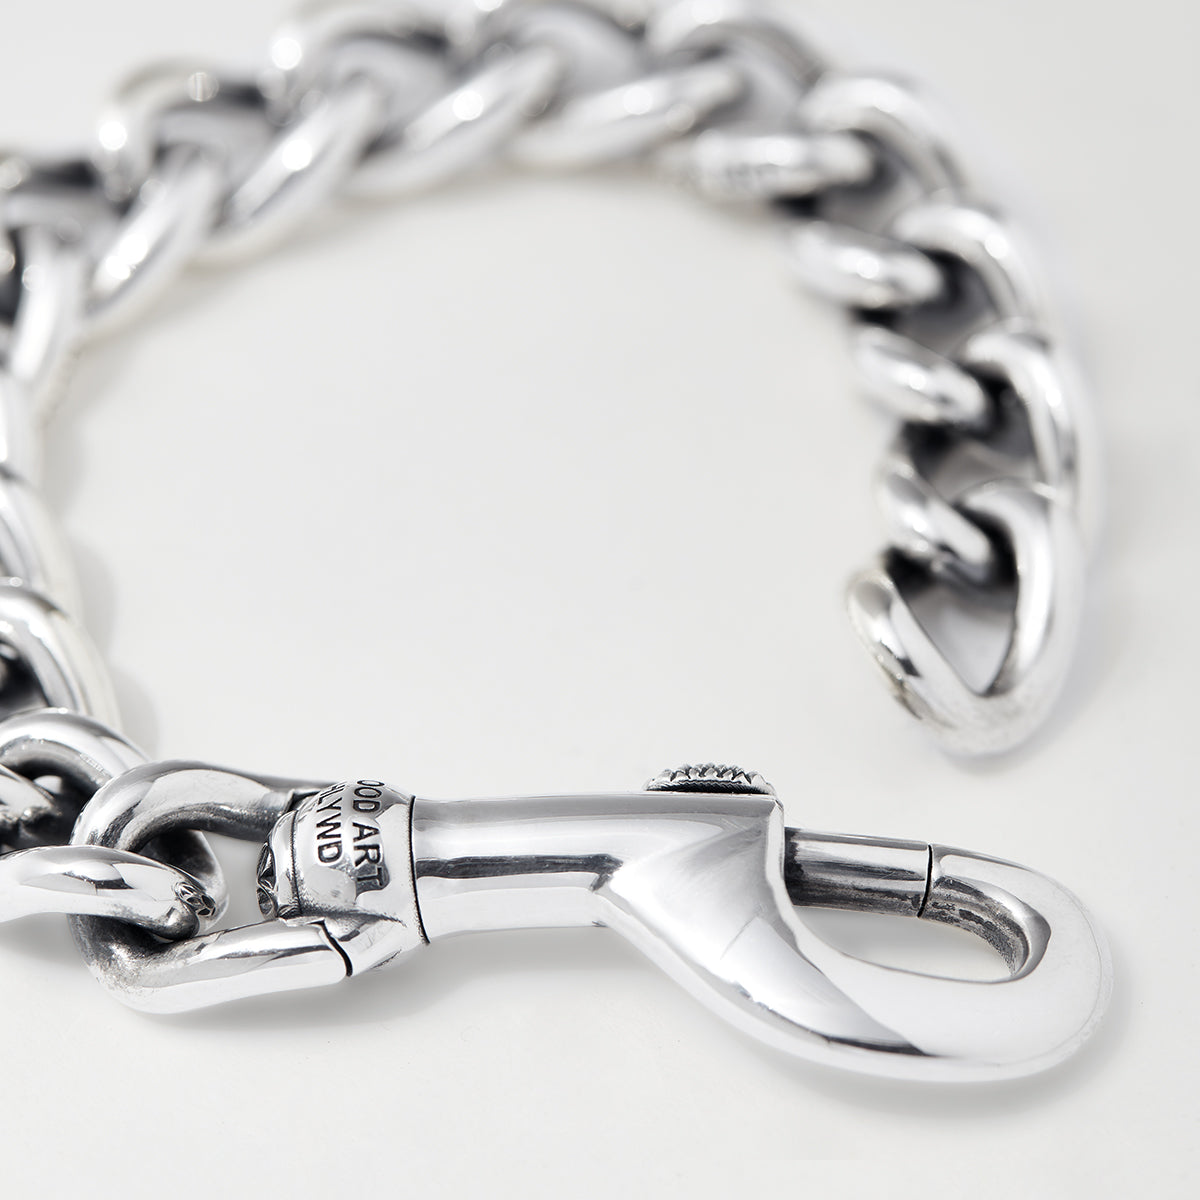 Fairfax Tru Value Bracelet - A